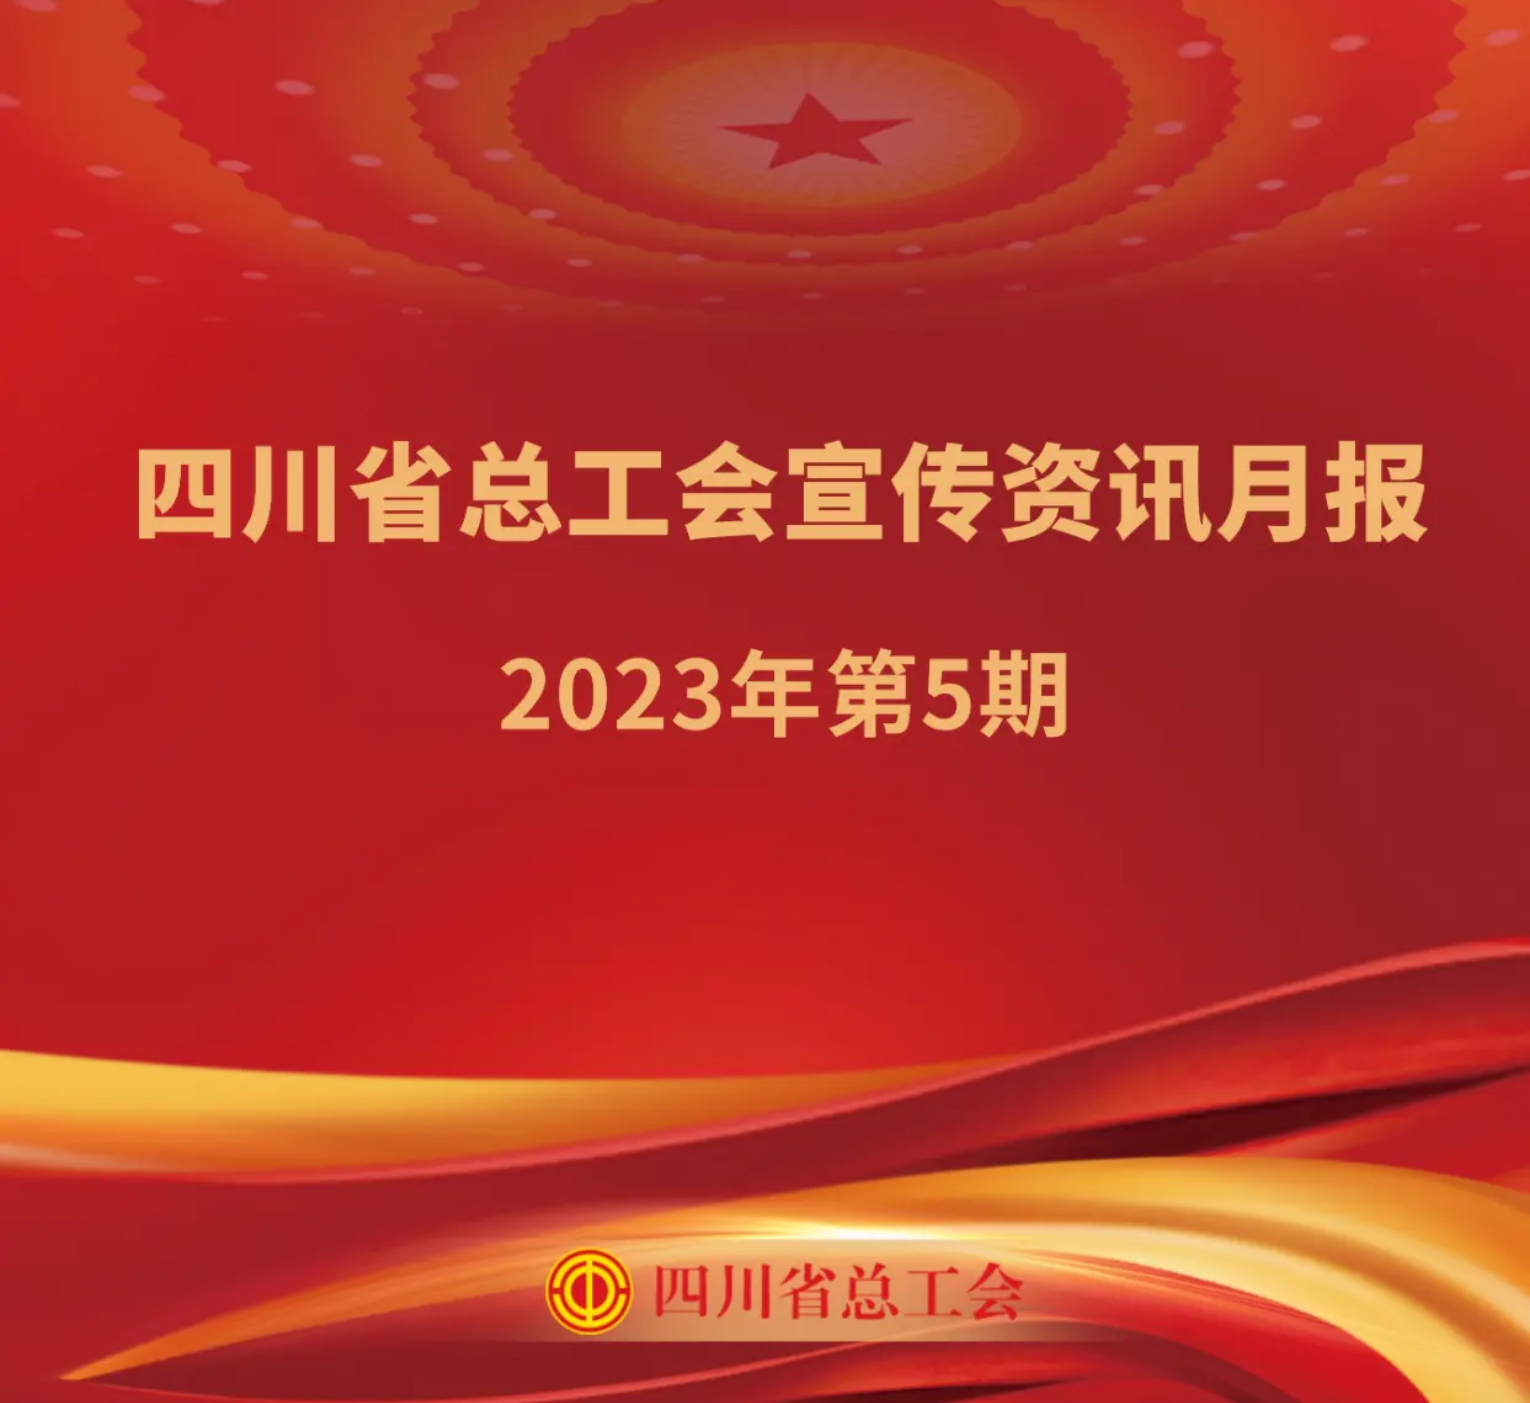 四川省总工会宣传资讯月报2023年第5期_装订本